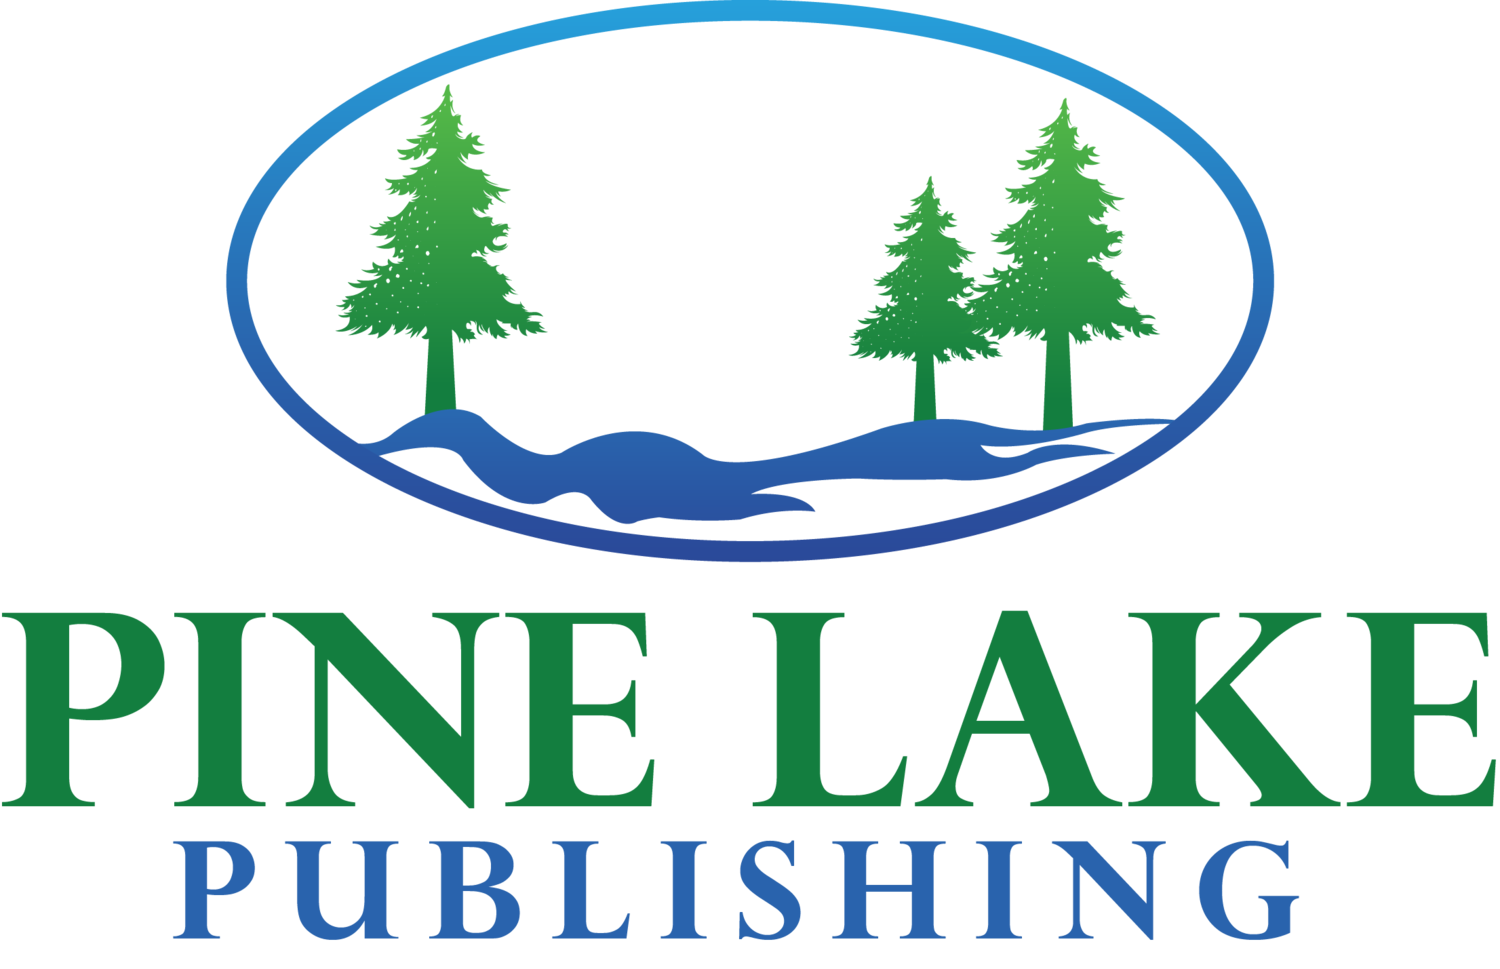  Pine Lake Publishing